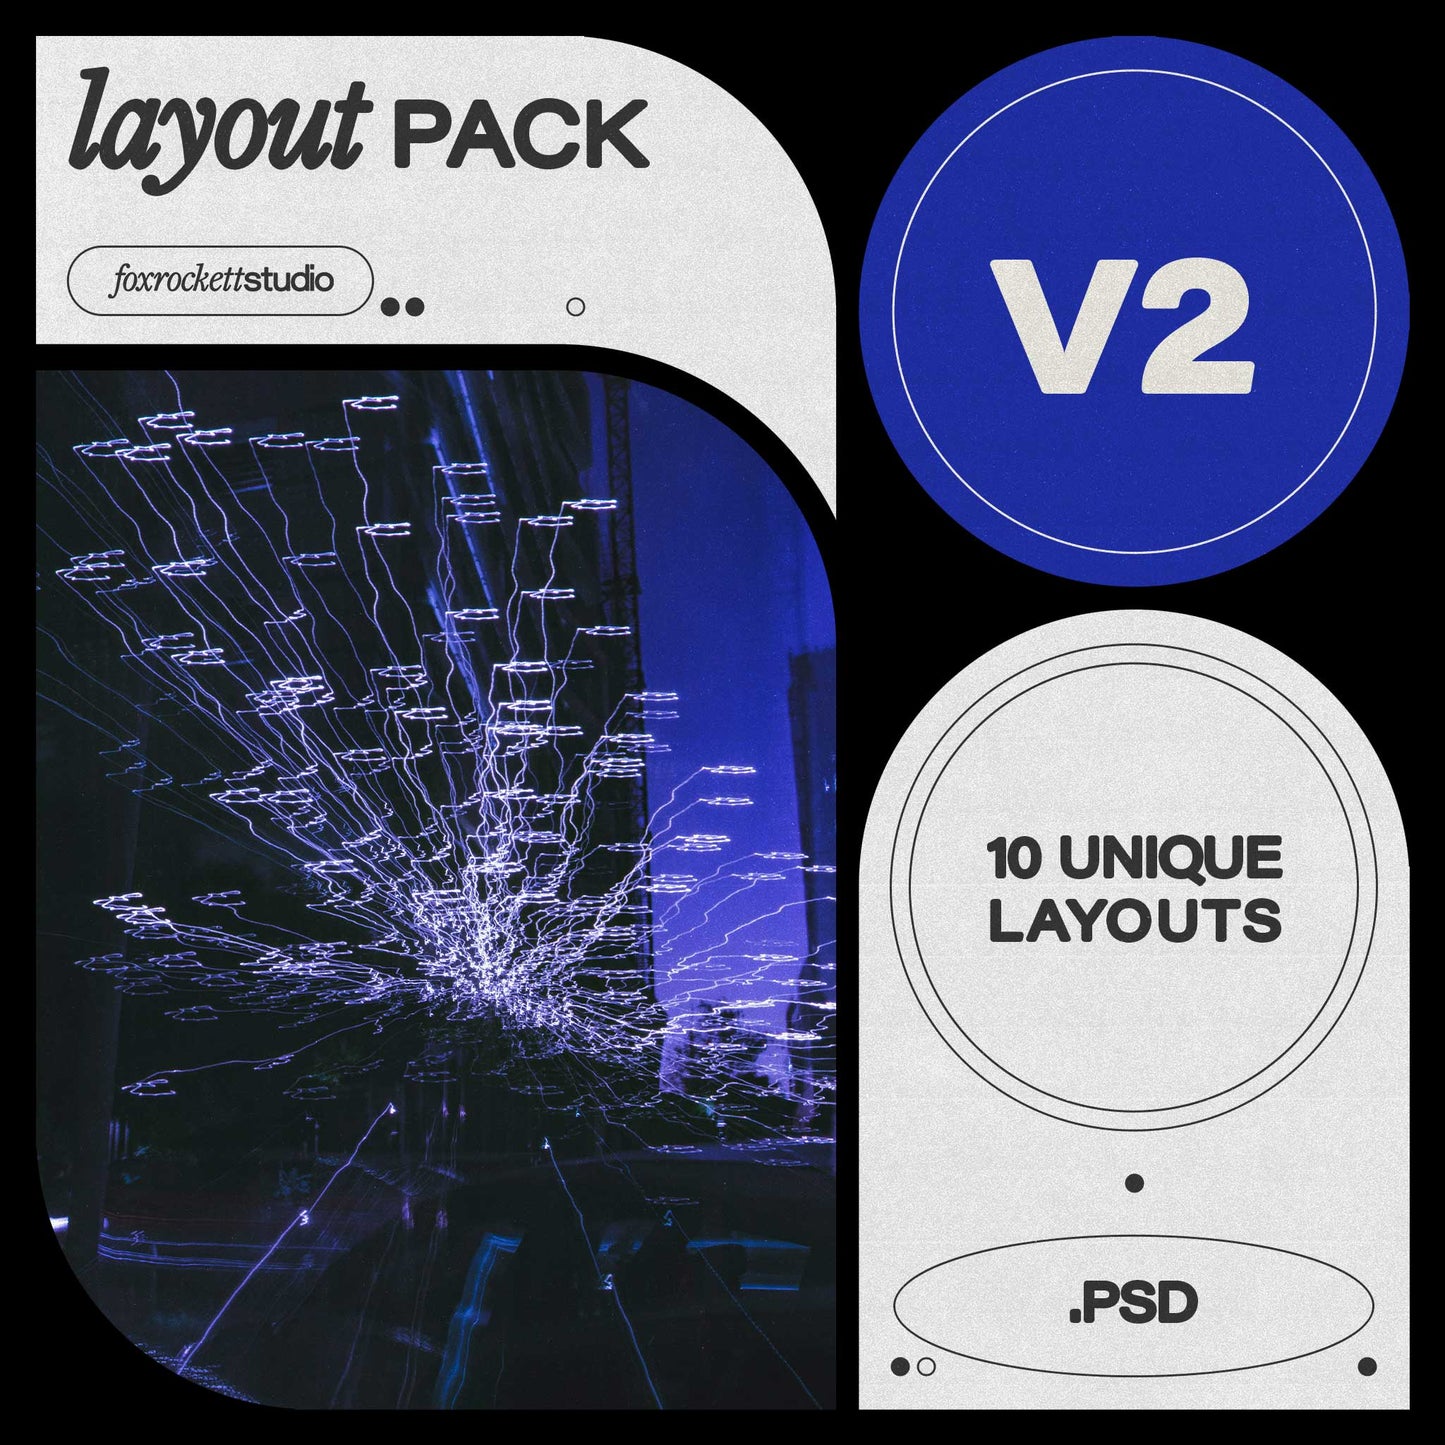 Layout Pack V2